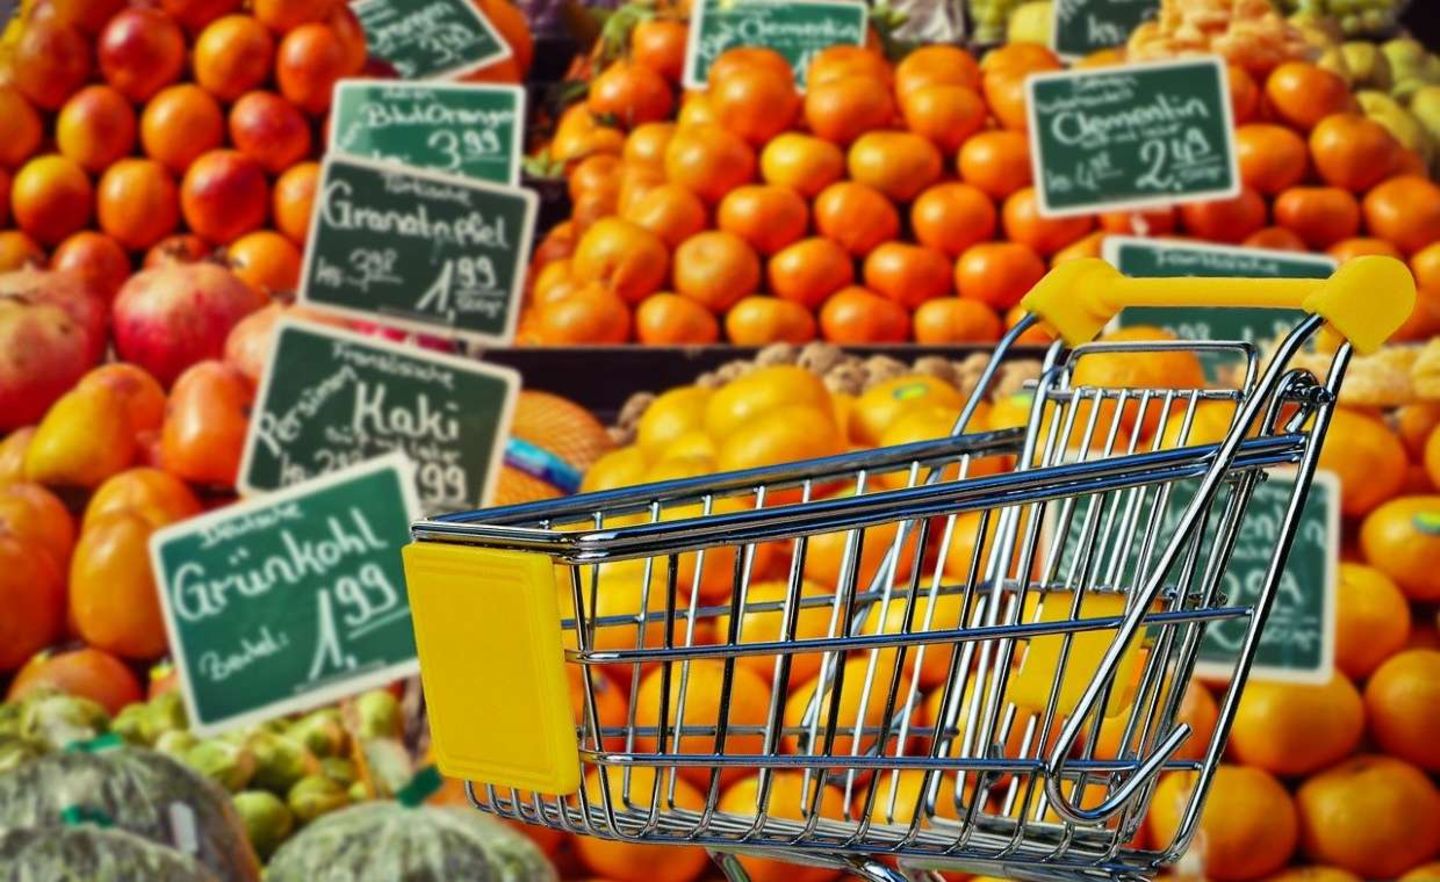 Preise in Höhe von 1,99 EUro begegnen uns im Supermarkt am häufigsten.